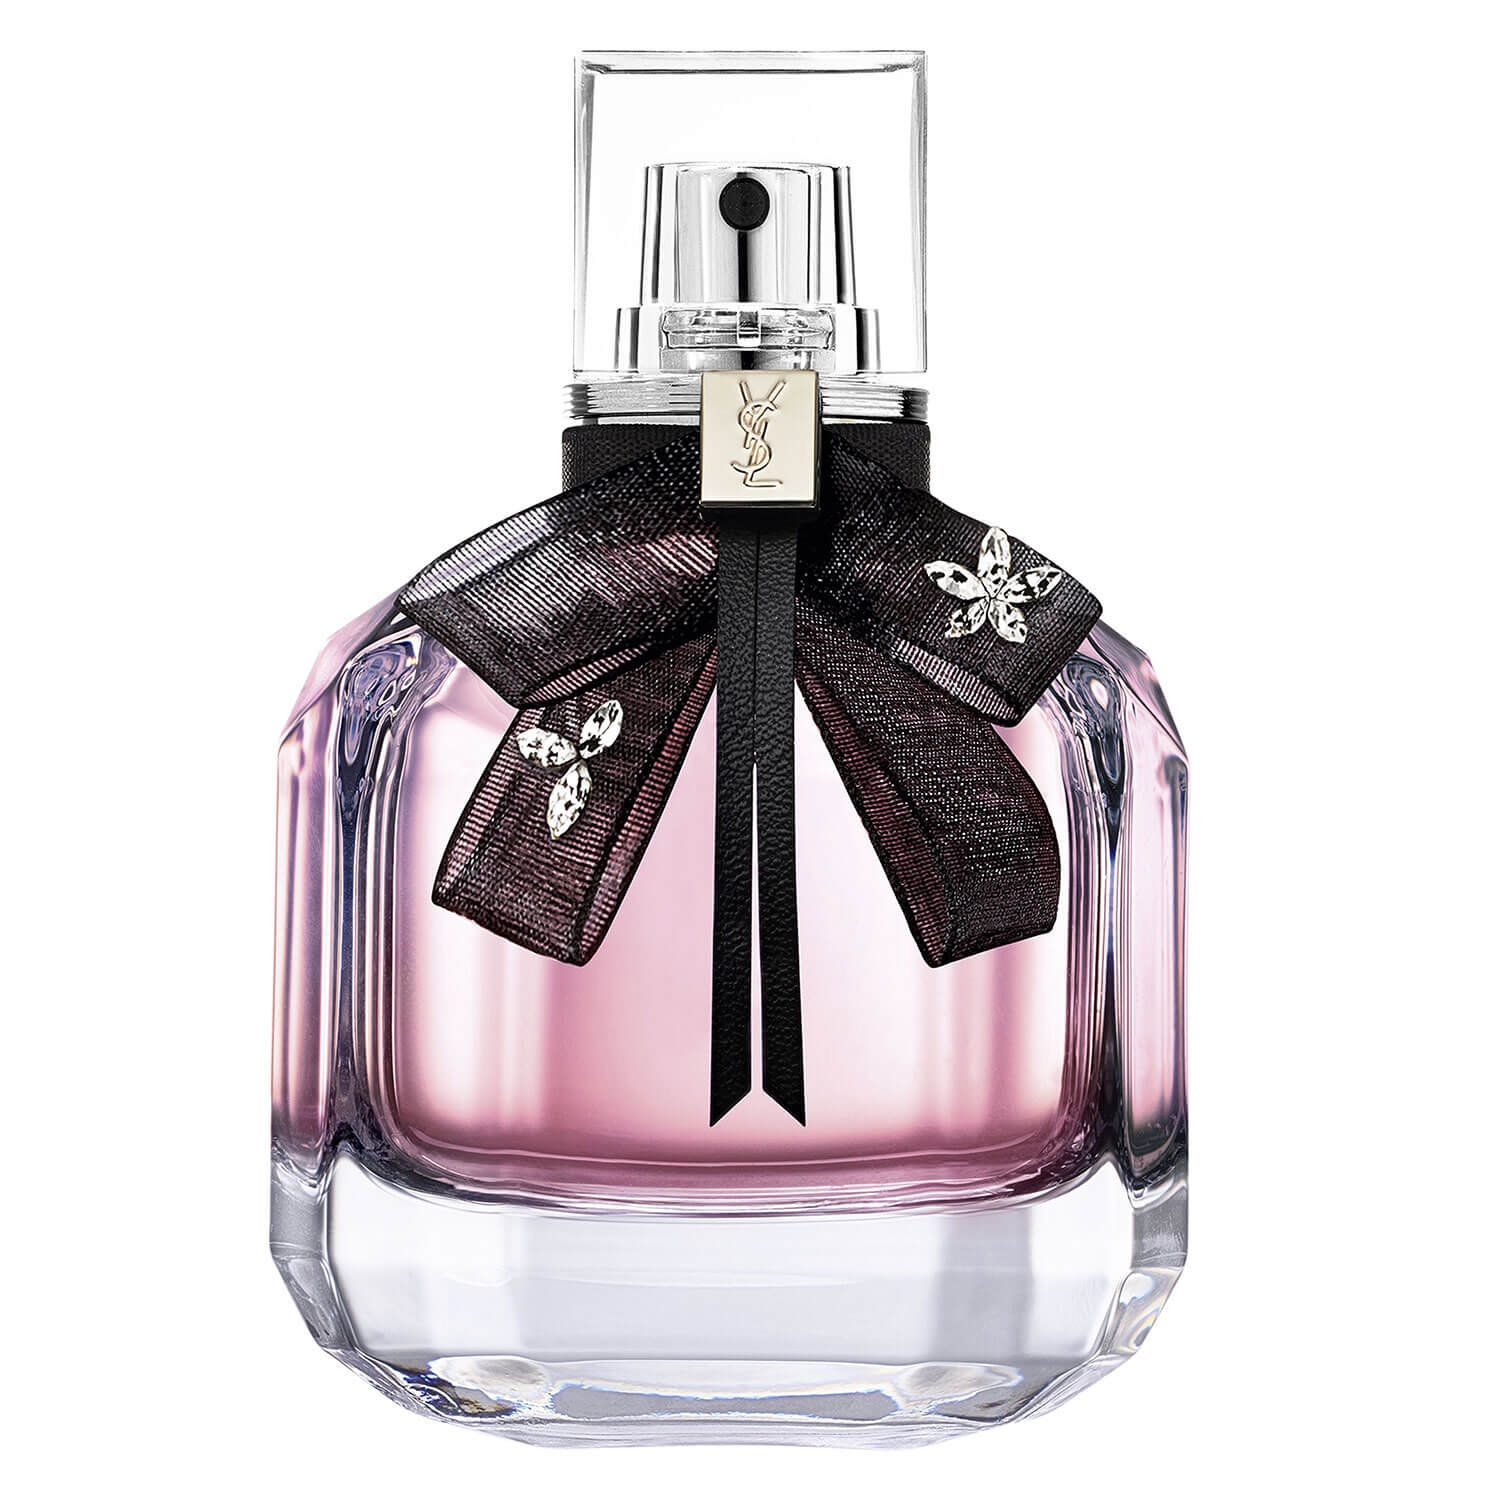 Product image from Mon Paris - Floral Eau de Parfum